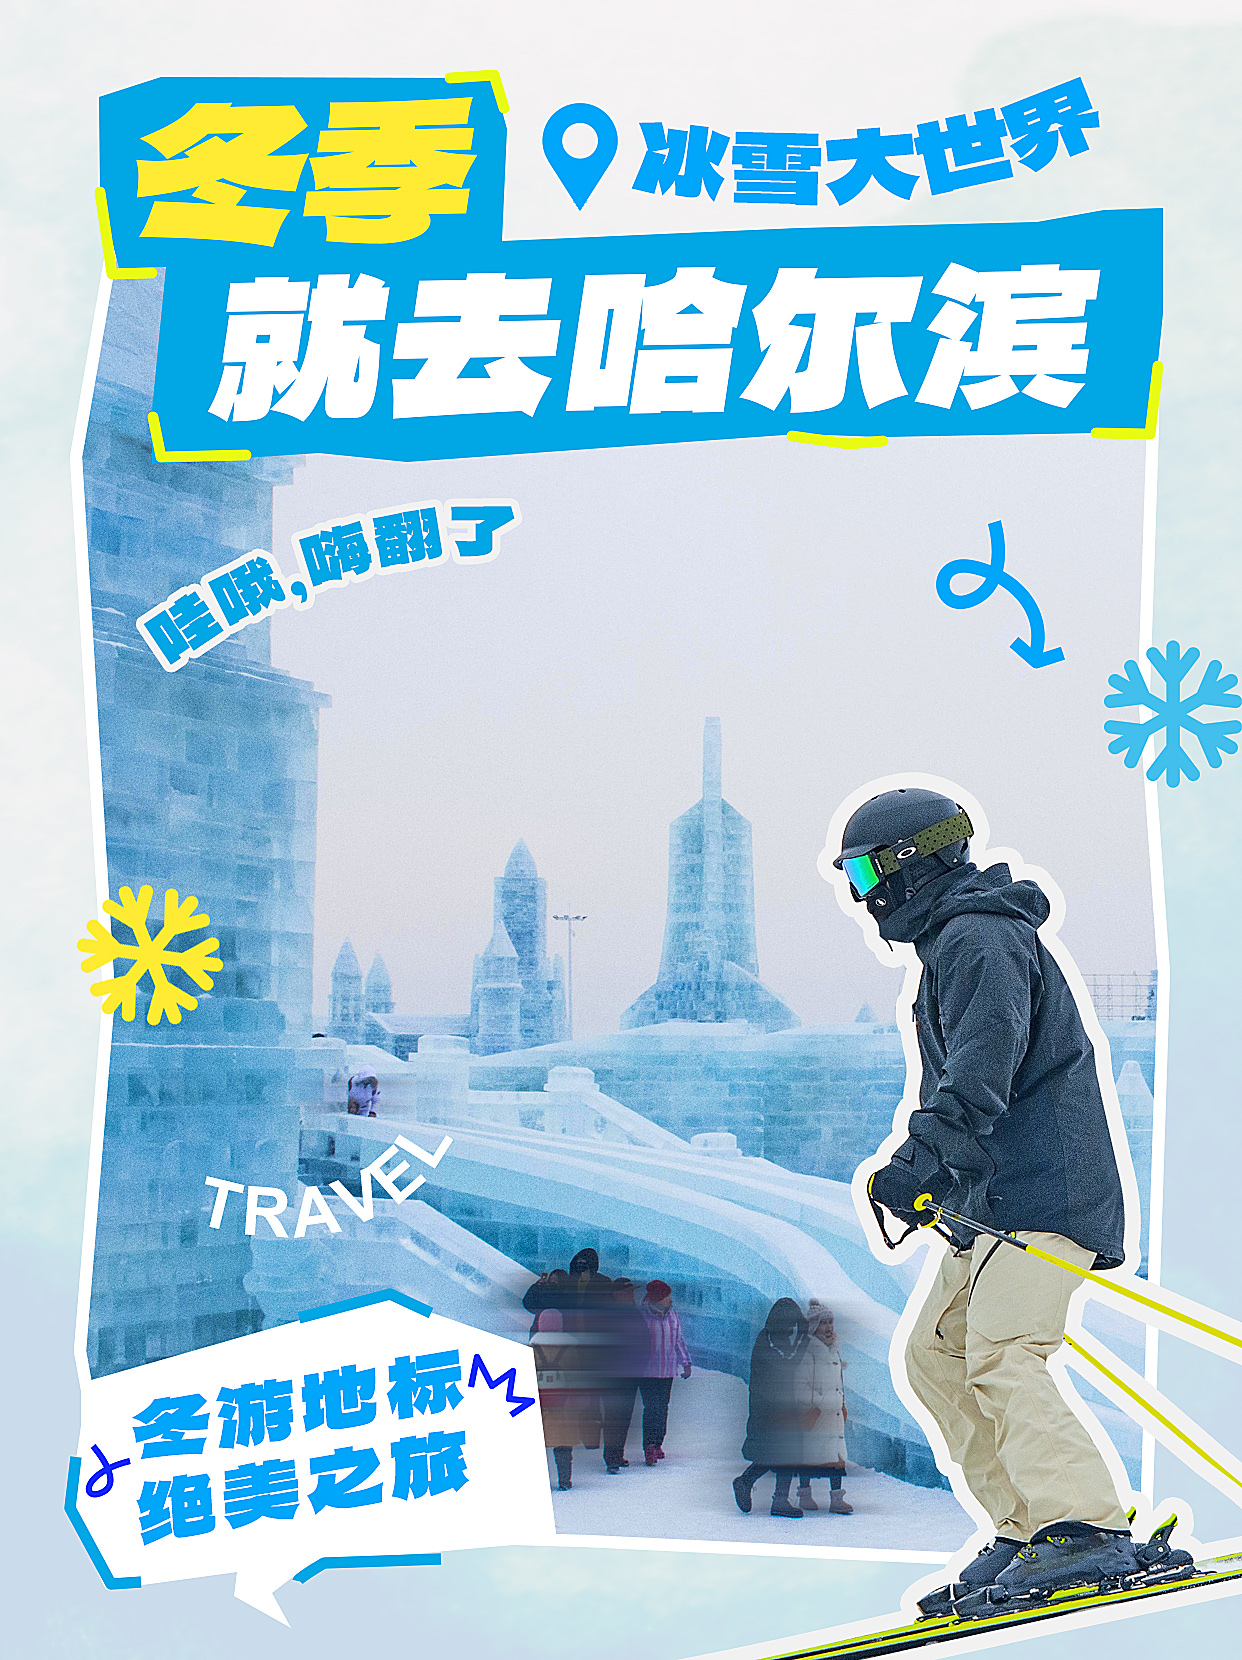 哈尔滨旅游滑雪冰雕蓝色拼贴风小红书封面手机端海报设计素材图片